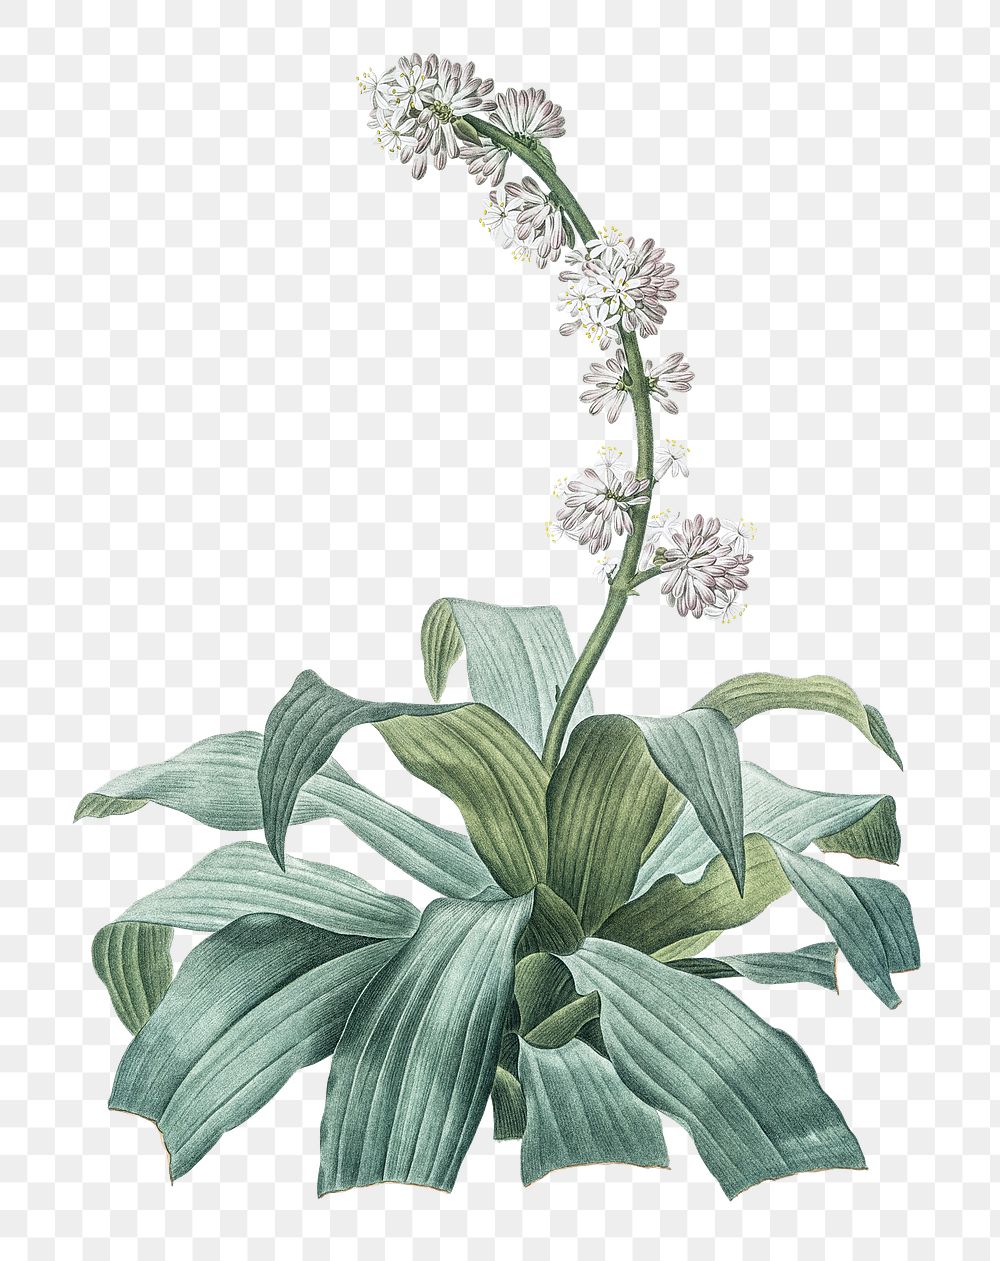 Aletris fragrans png sticker, vintage botanical illustration, transparent background